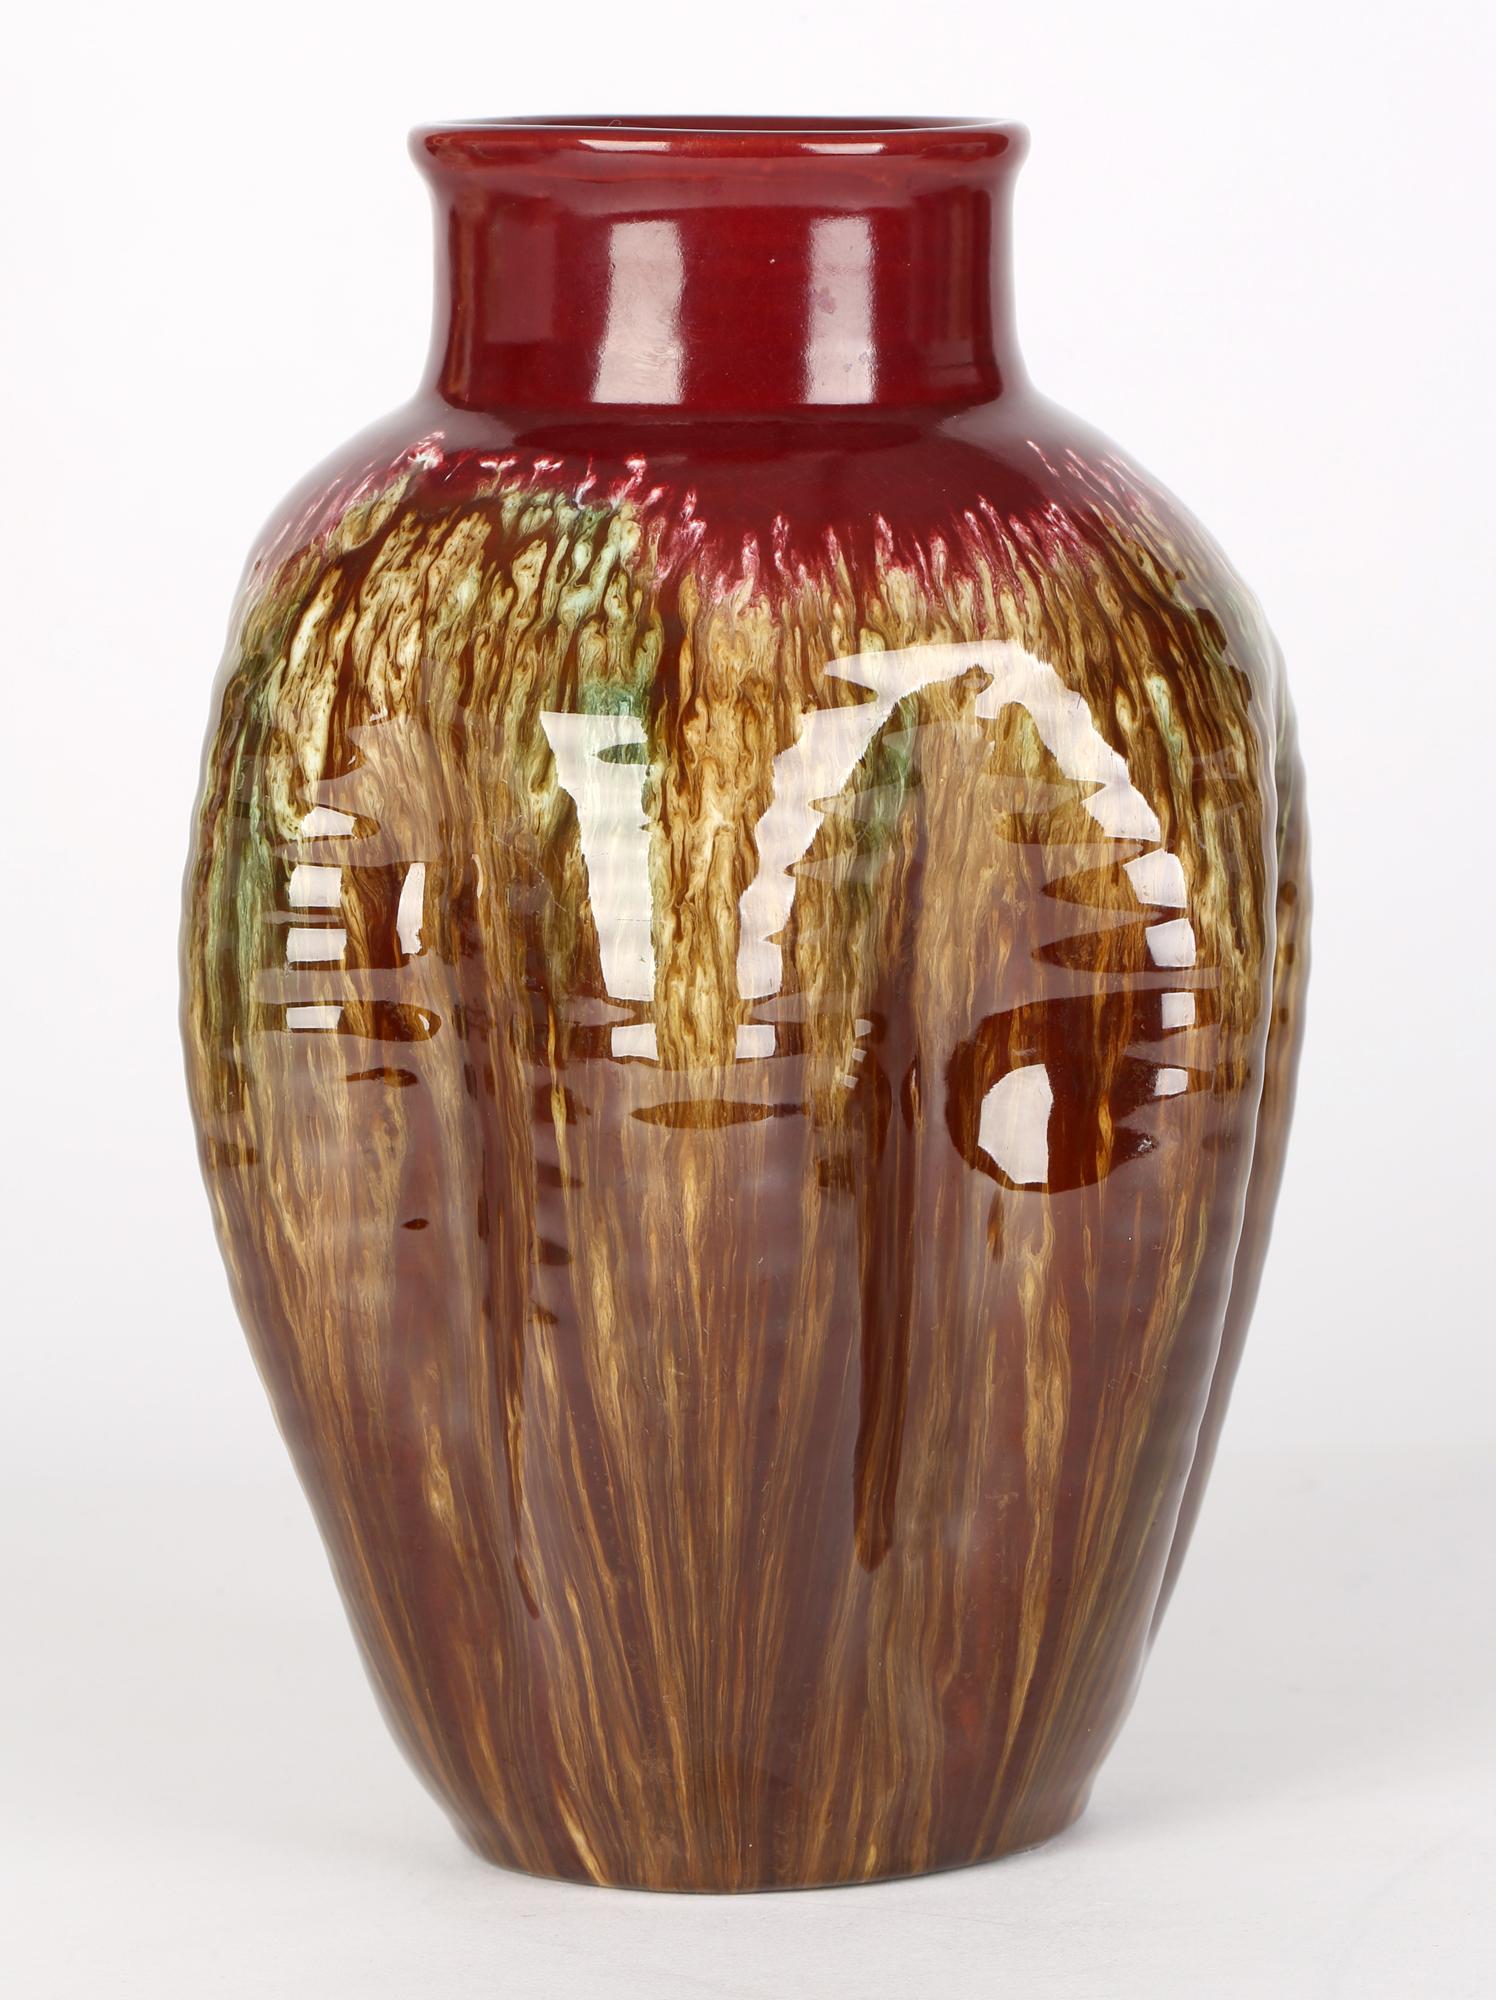 Poteries Christopher Dresser Linthorpe Pinched Streak Glazed Art Pottery Vase en vente